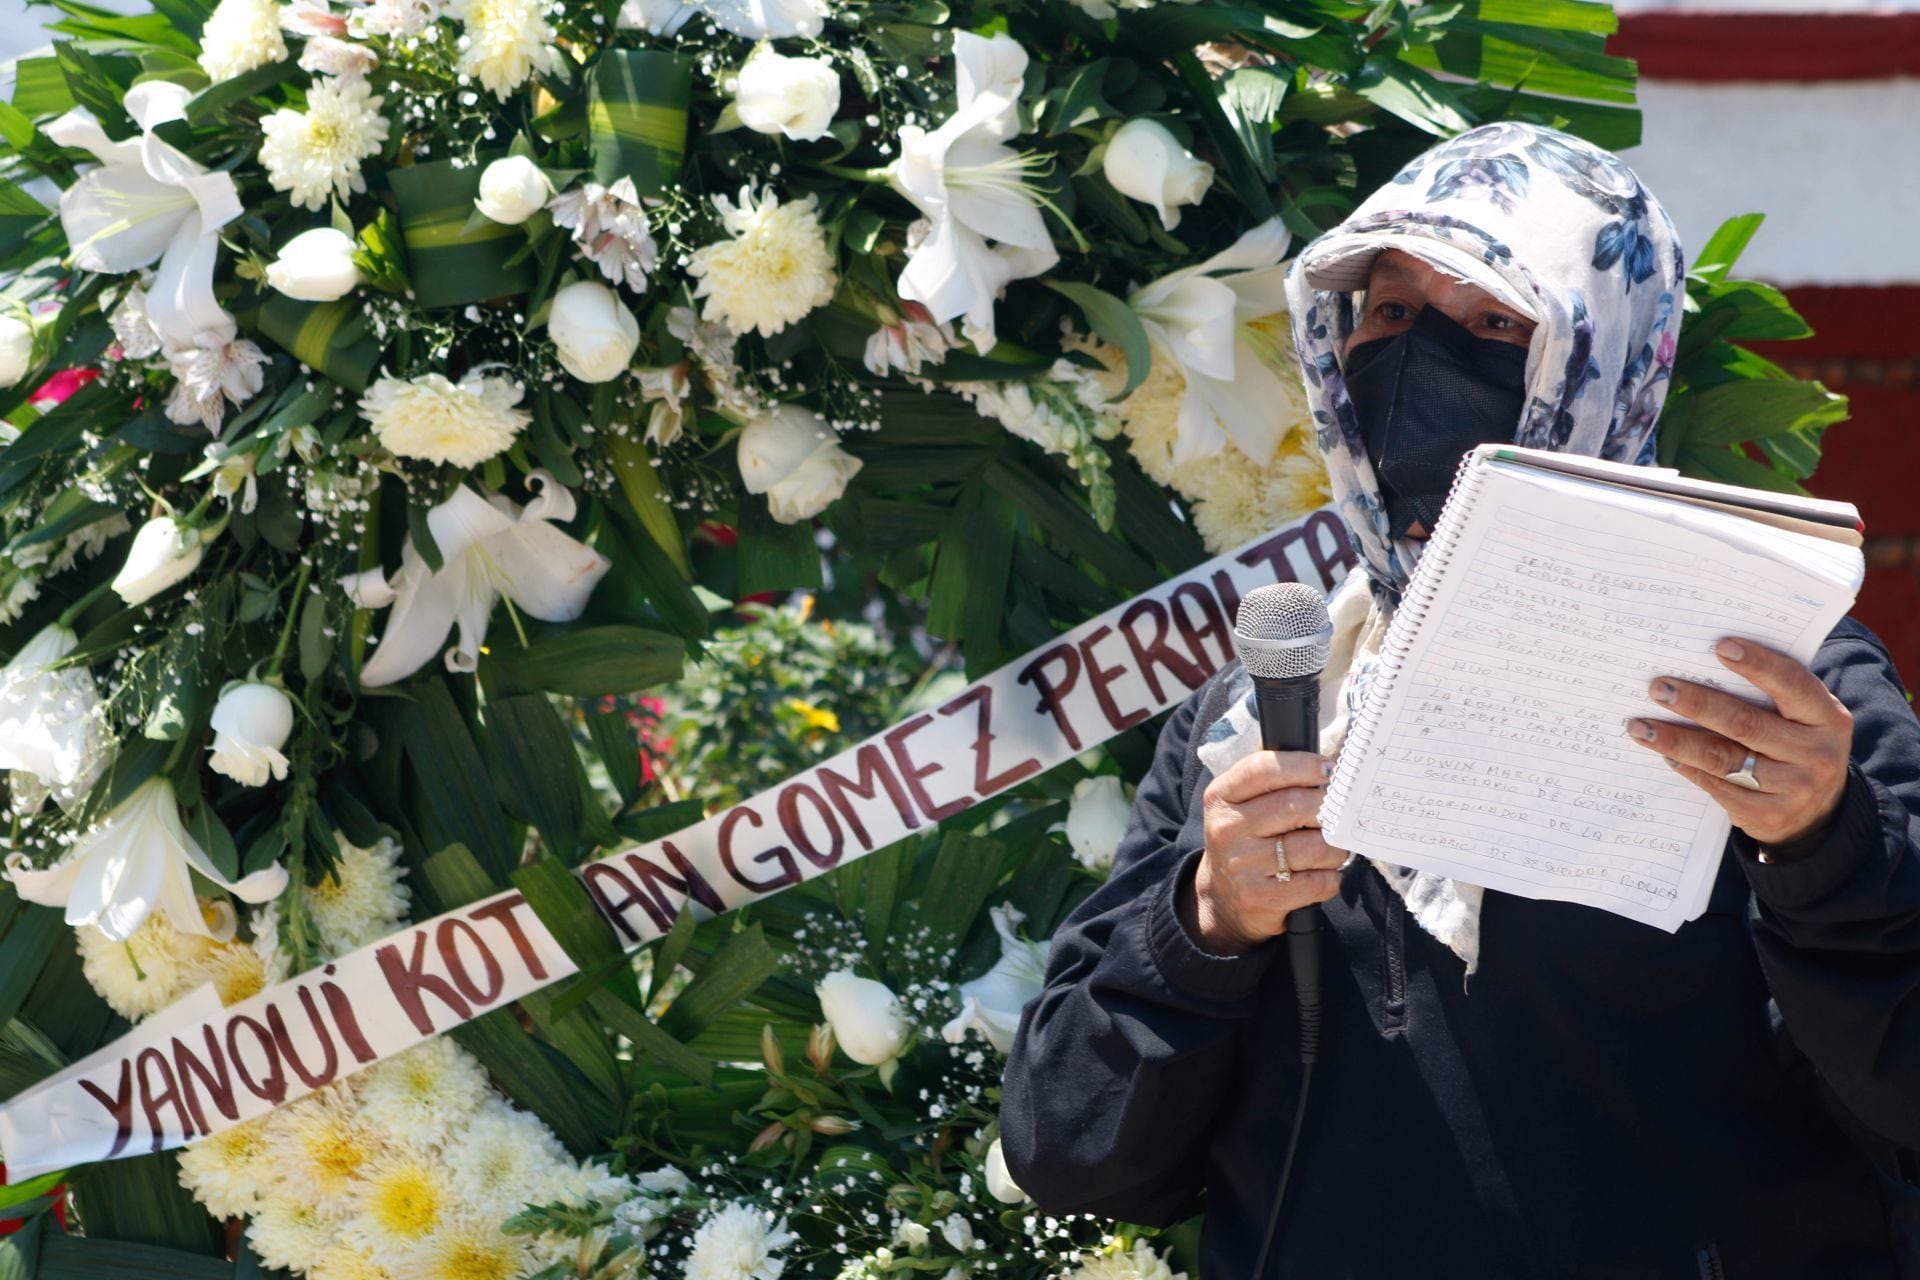 La madre de Yanqui Kothan Gómez Peralta, asesinado por policías, exigió la destitución de los funcionarios involucrados en la investigación del caso.